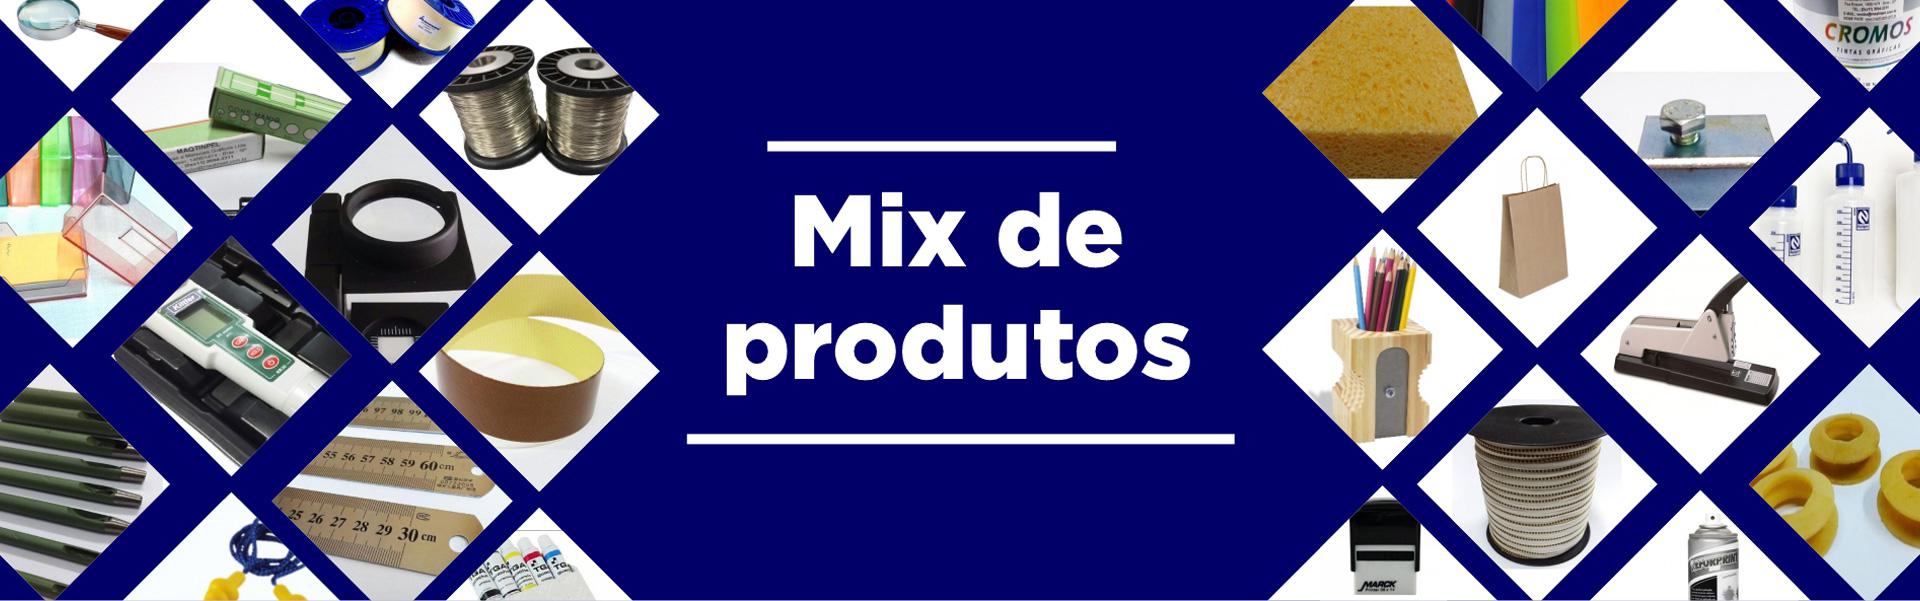 Mix de Produtos